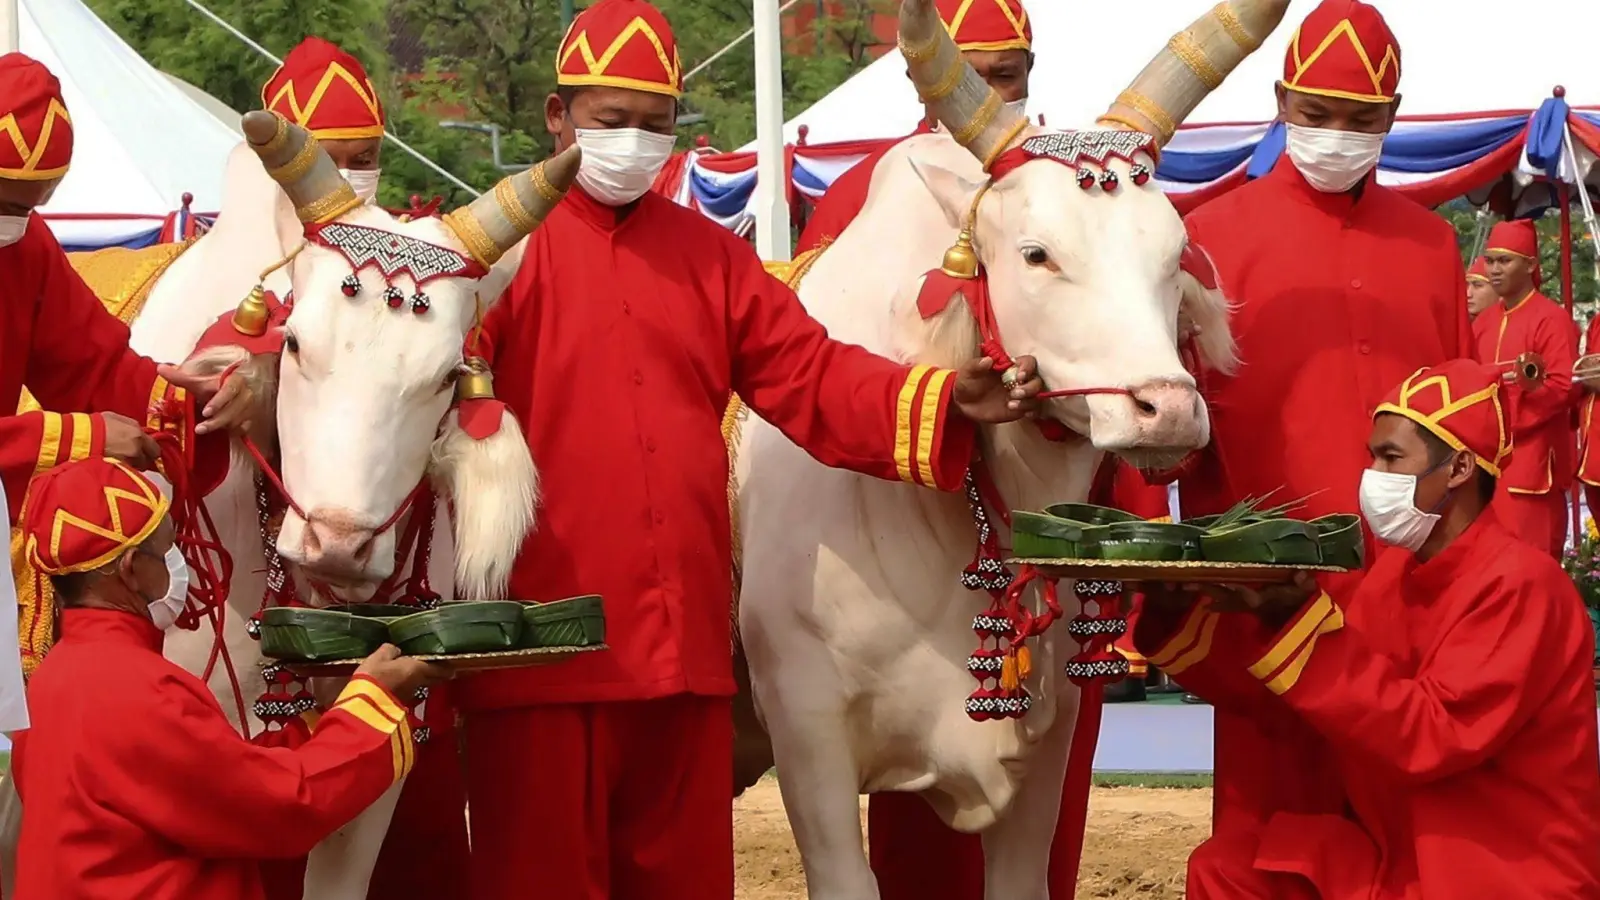 Thailändische Beamte in altertümlicher Kleidung präsentieren Ochsen während der königlichen Pflugzeremonie zwei Tabletts mit mit Lebensmitteln. (Foto: Worapong Charoenpol/Matichon Newspaper Pool/AP/dpa)